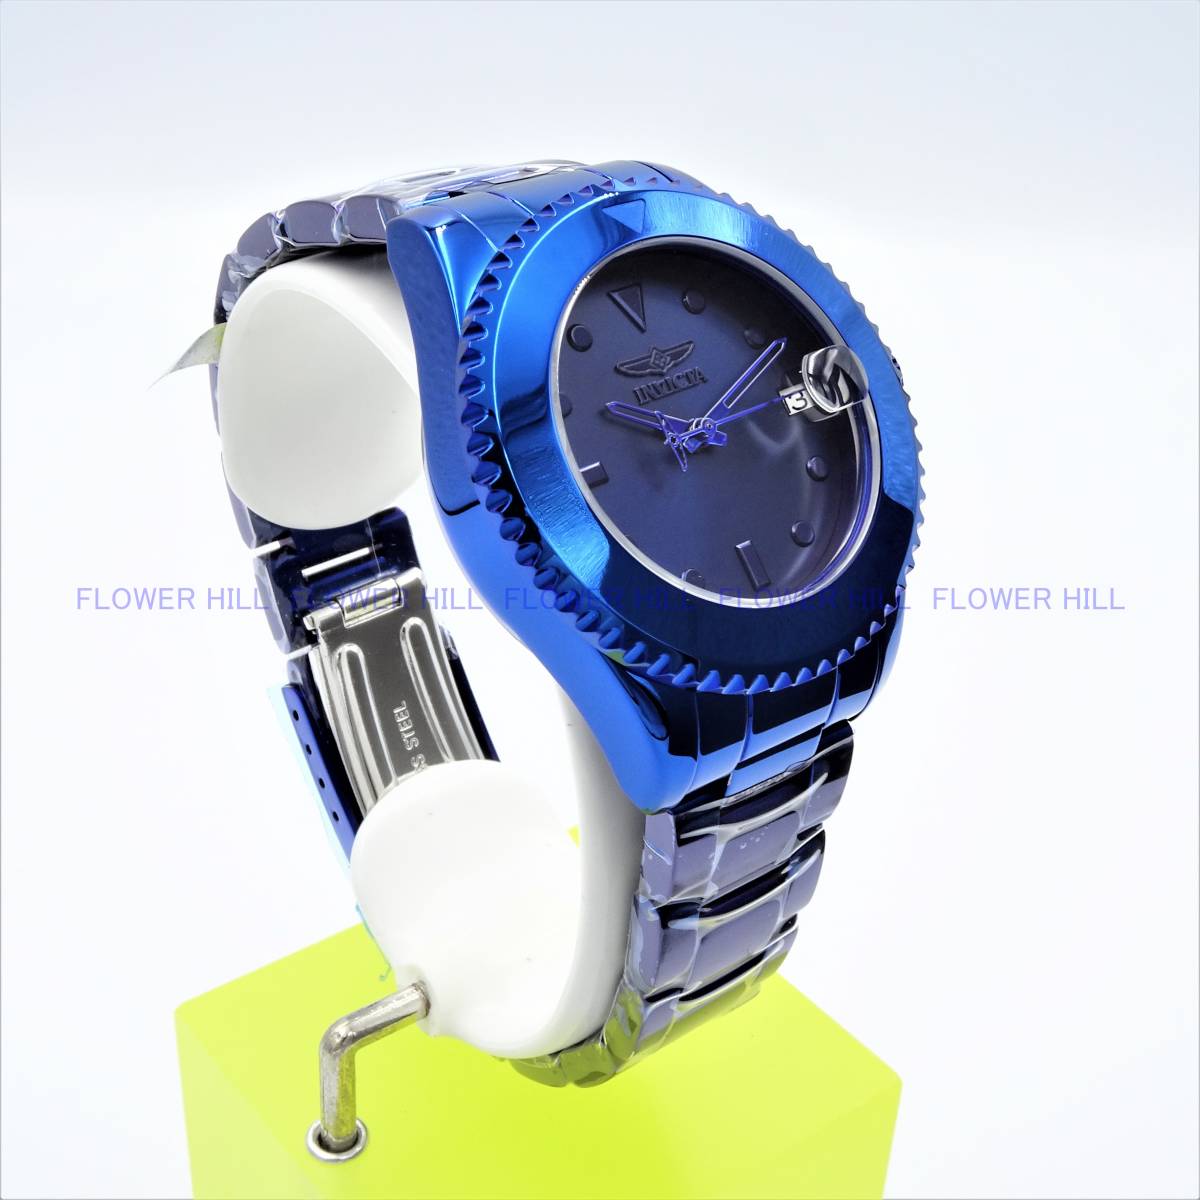 【新品・送料無料】インビクタ INVICTA 腕時計 35043 プロダイバー PRO DIVER 自動巻き ブルー メタルバンド カレンダー